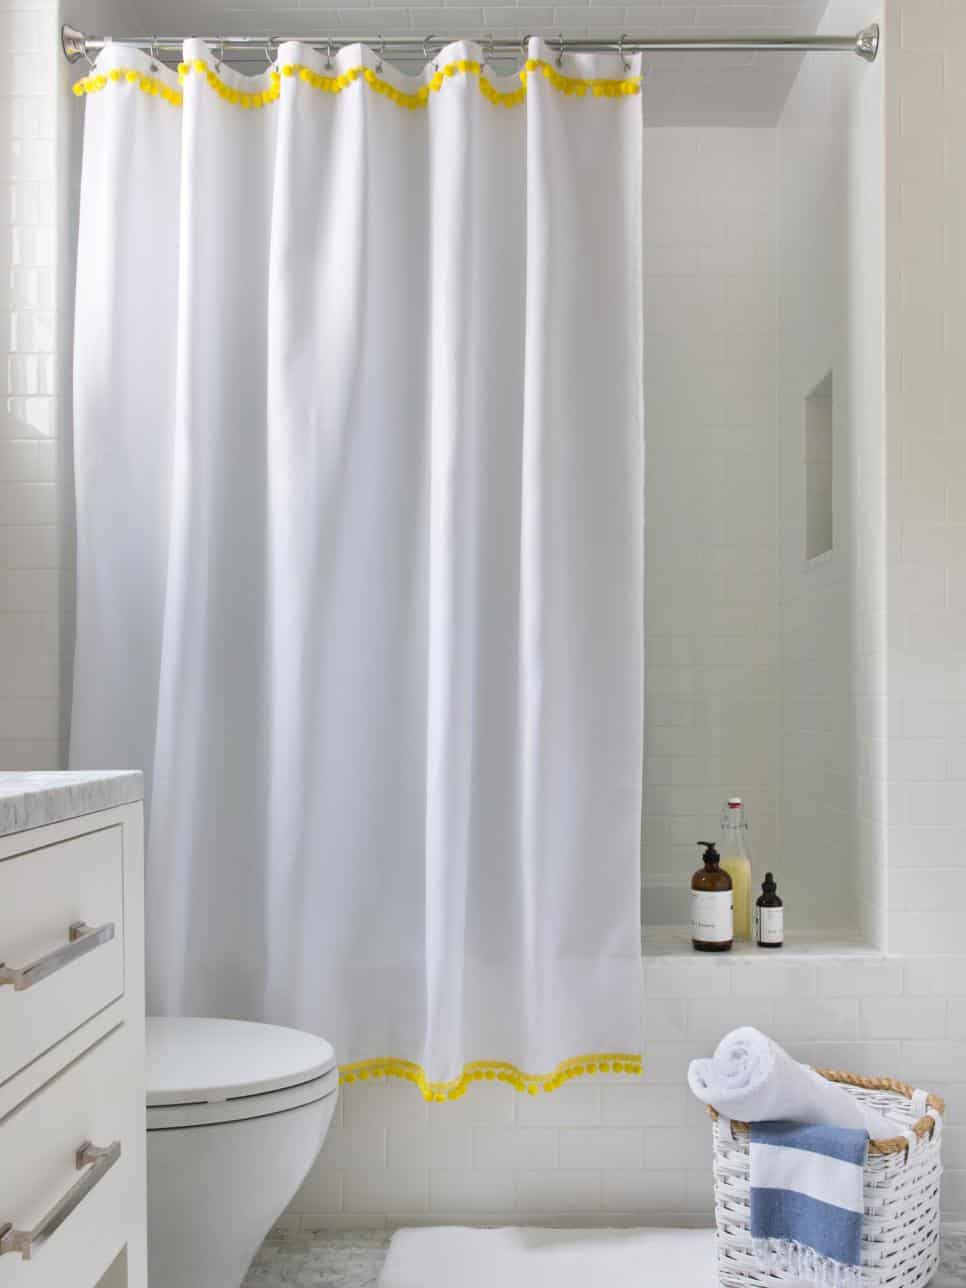 a-fancier-shower-curtain